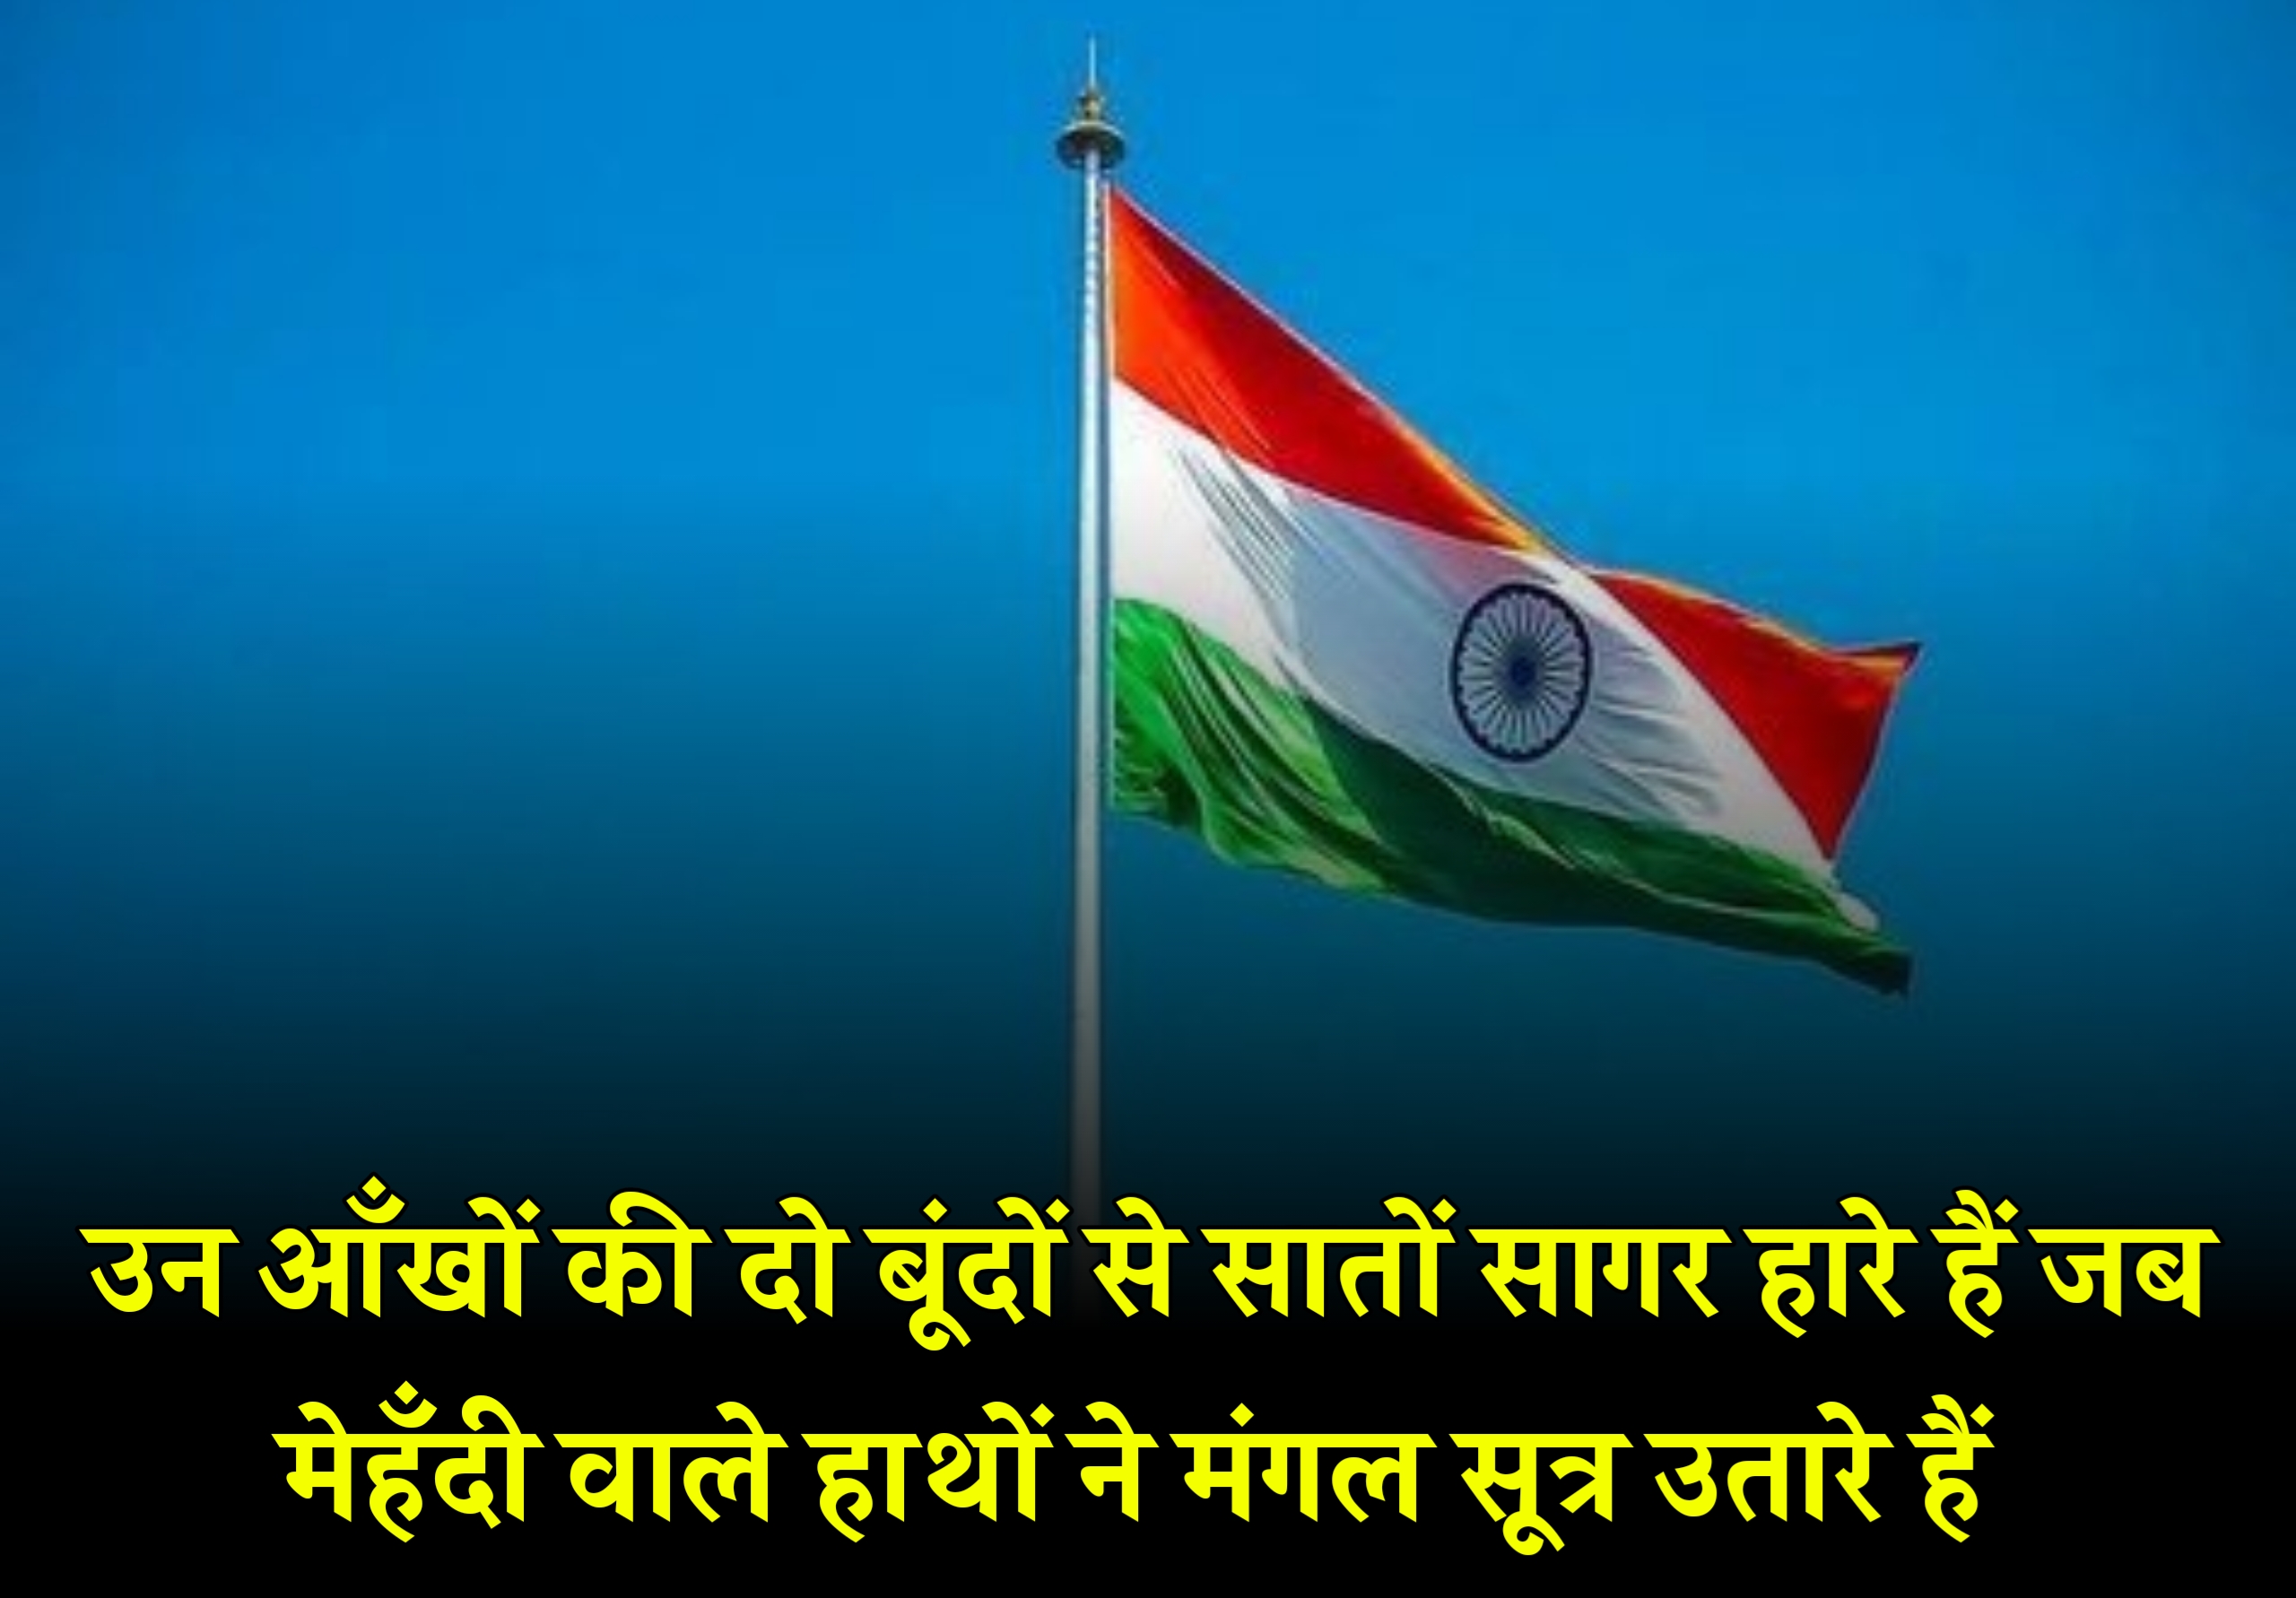 15 अगस्त पर शायरी 2023 | स्वतंत्रता दिवस पर शायरी 2023 | Happy Independence day shayari in Hindi 2023,independence day shayari status quotes wishes in hindi 2023,15 अगस्त की शुभकामनाएं भेजें 2023,15 August shayari in hindi 2023